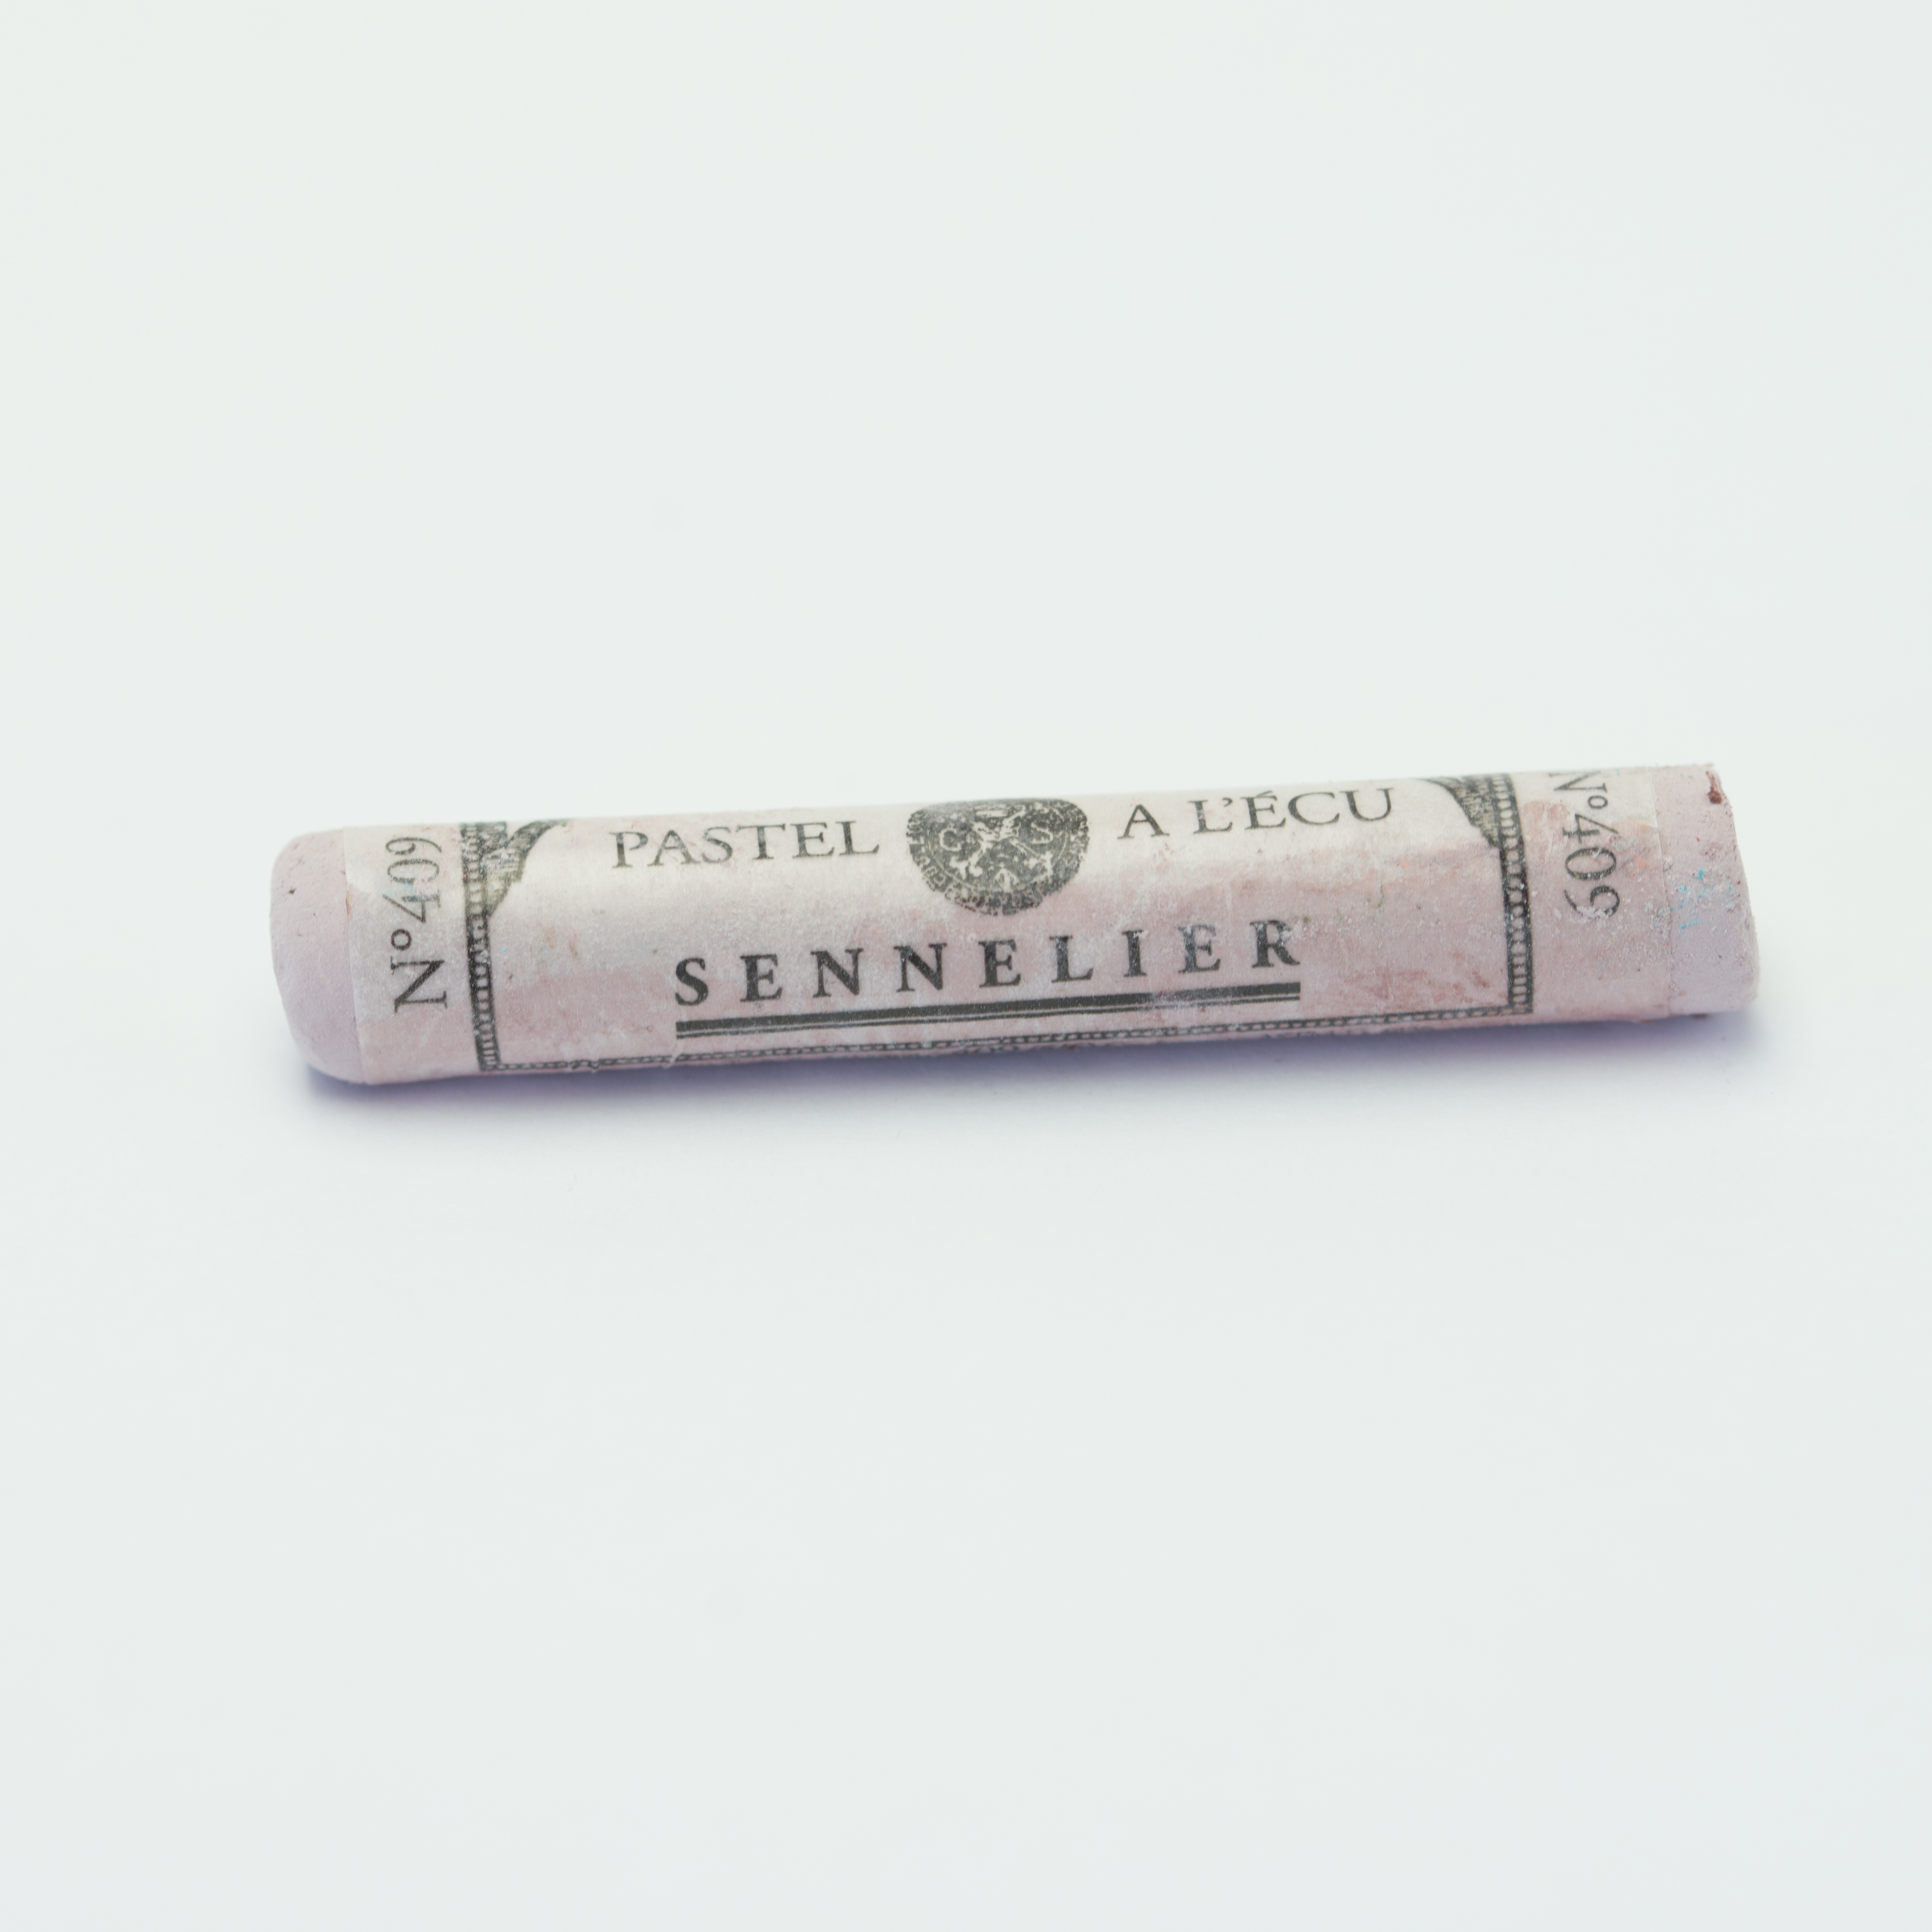 Sennelier Extra Soft Pastels - Van Dick Violet 409